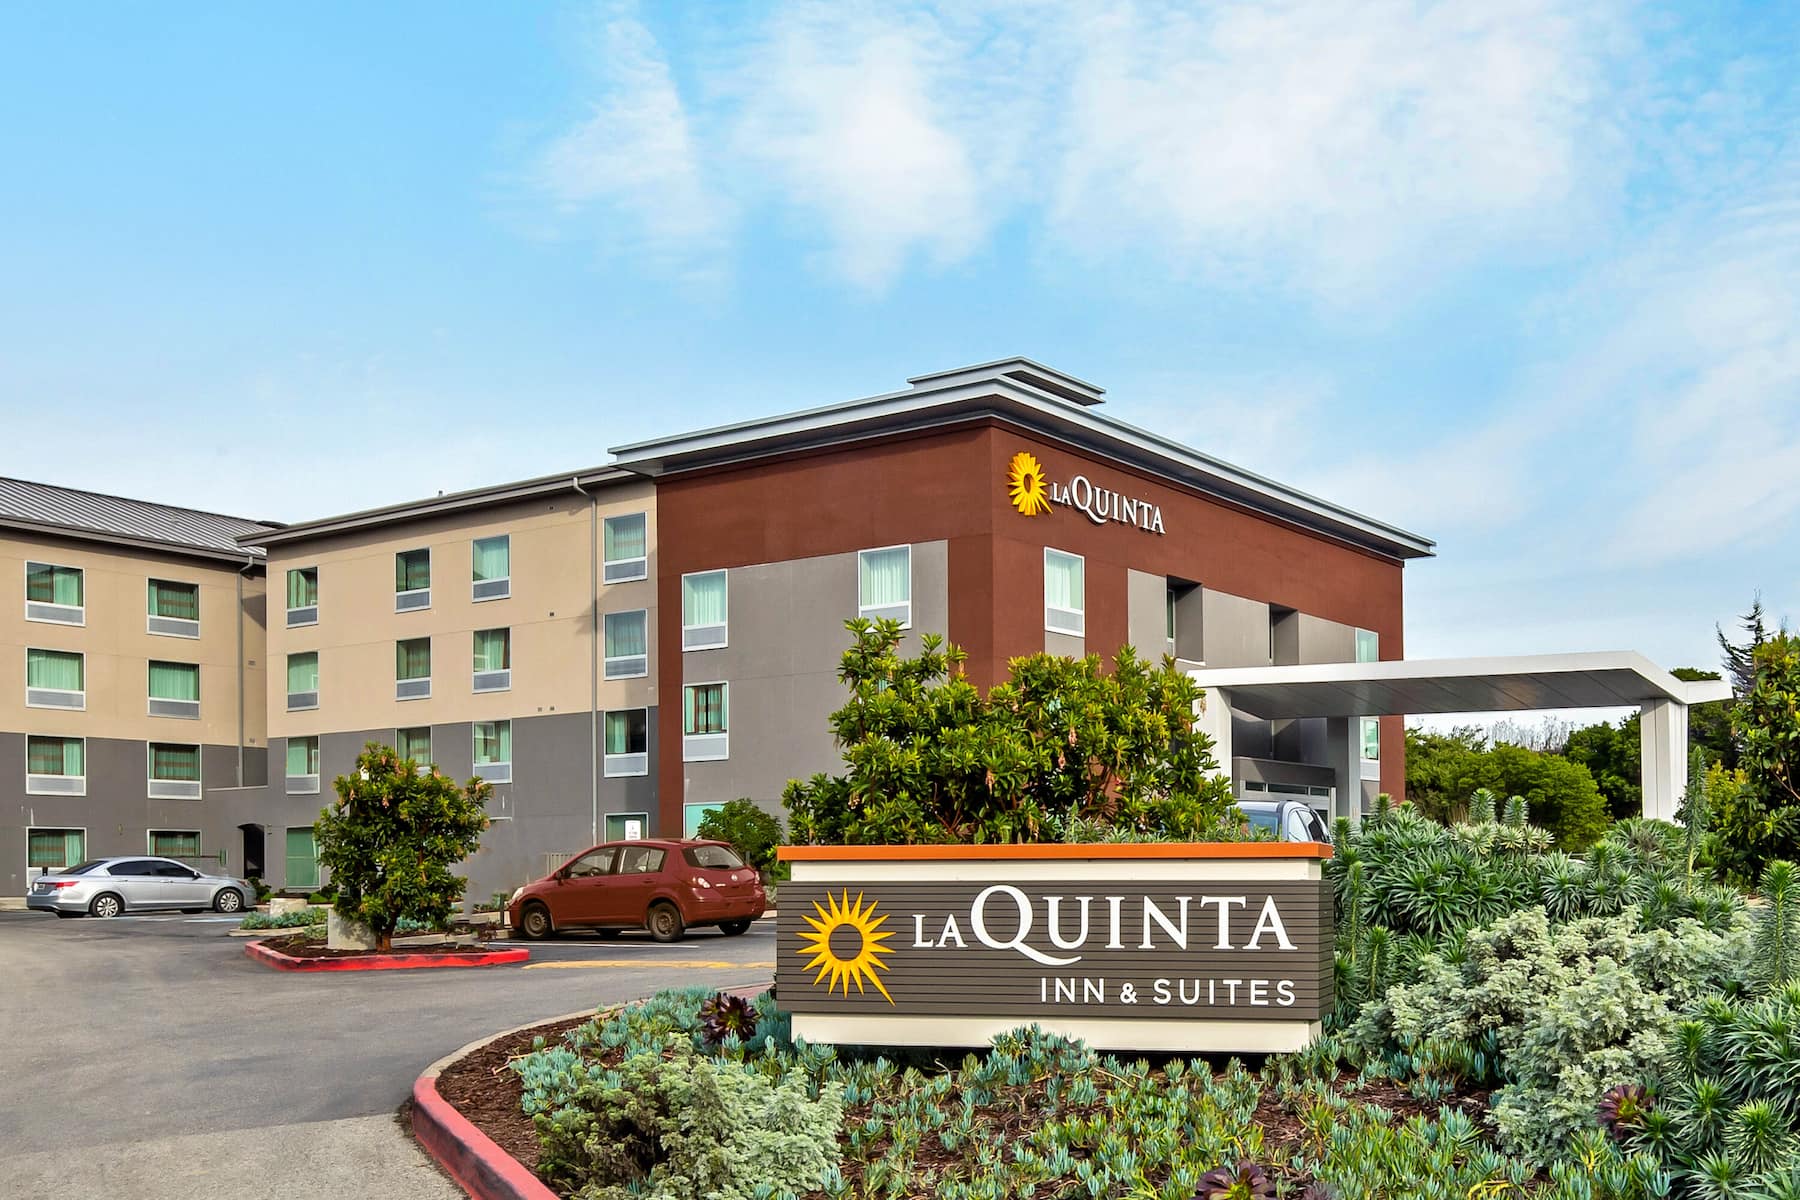 La Quinta Inn & Suites by Wyndham
San Francisco Airport N